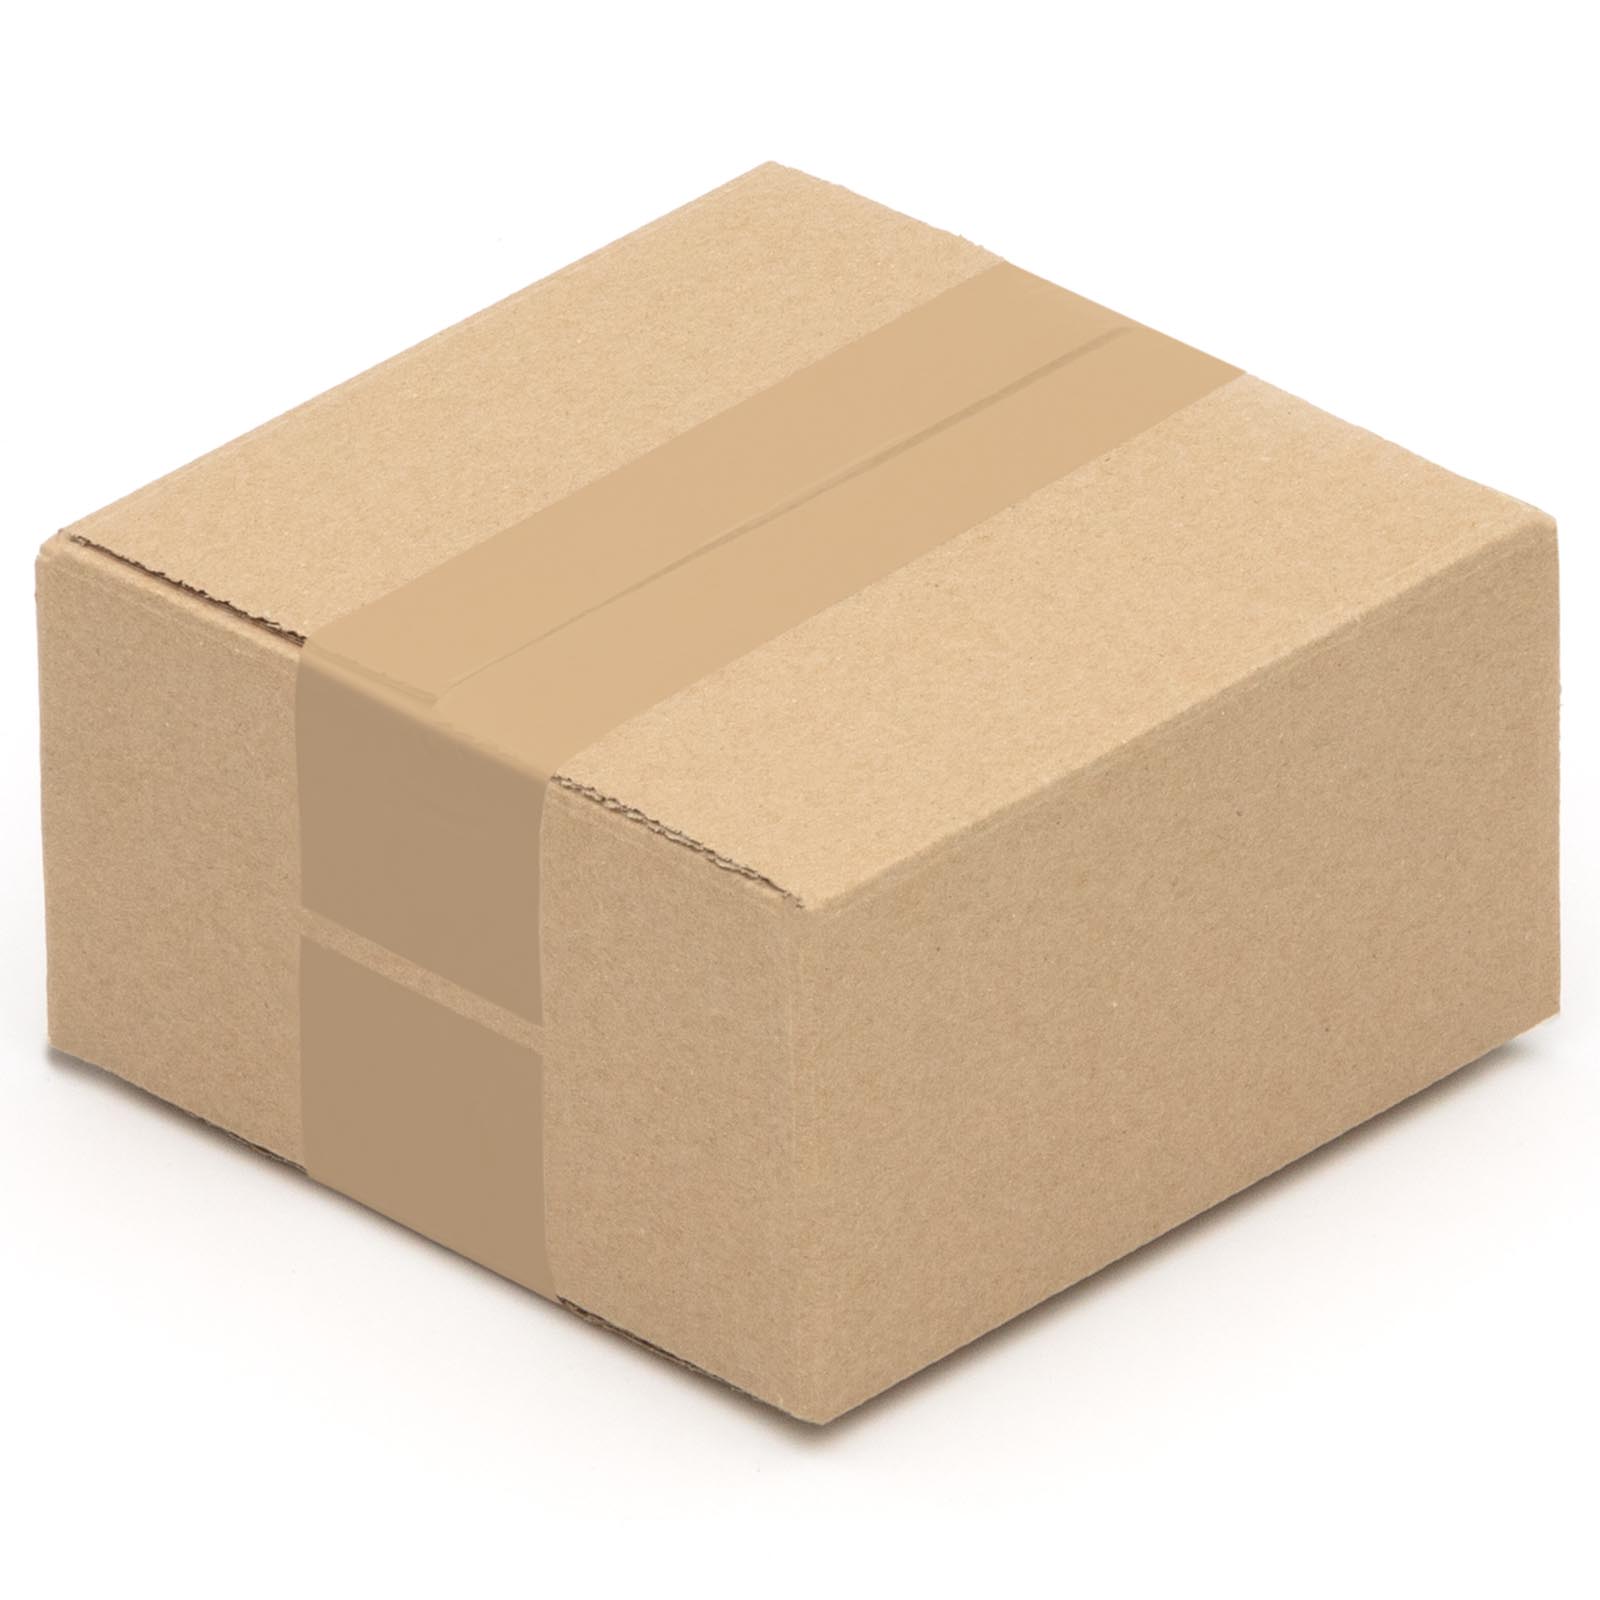 Karton Faltkarton Versandkarton Verpackungen Schachtel Größe und Menge wählbar 